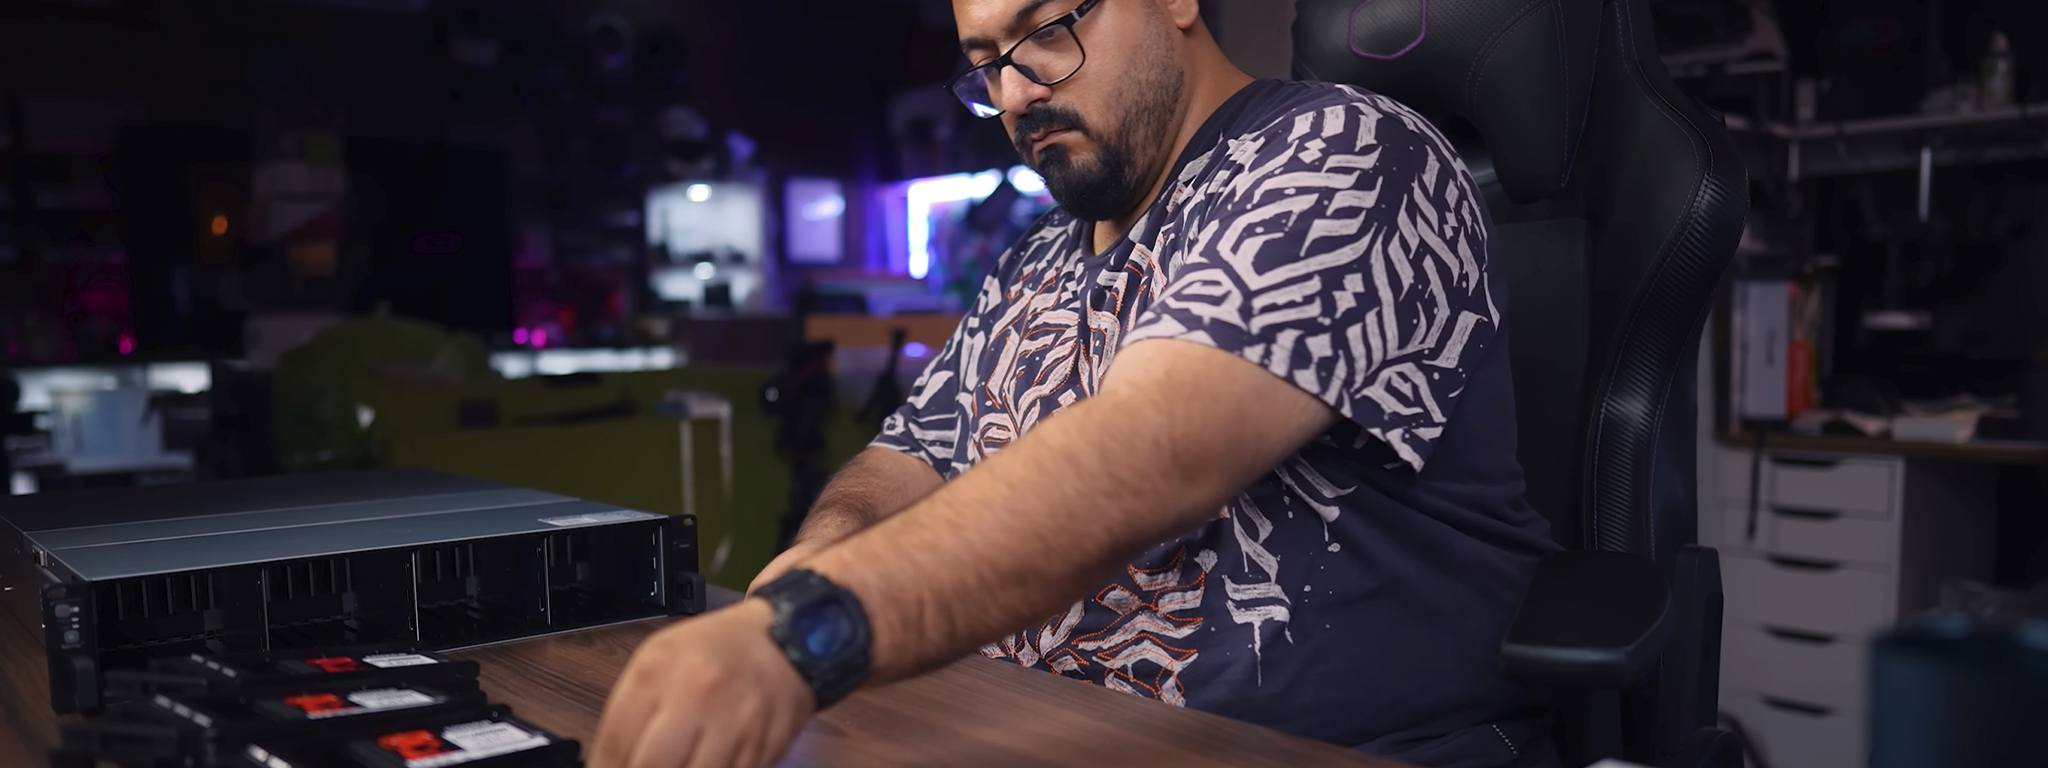 Salah Hamed – Người có tầm ảnh hưởng trên kênh Android Basha đang lắp đặt ổ SSD DC600M trong tủ mạng trên bàn